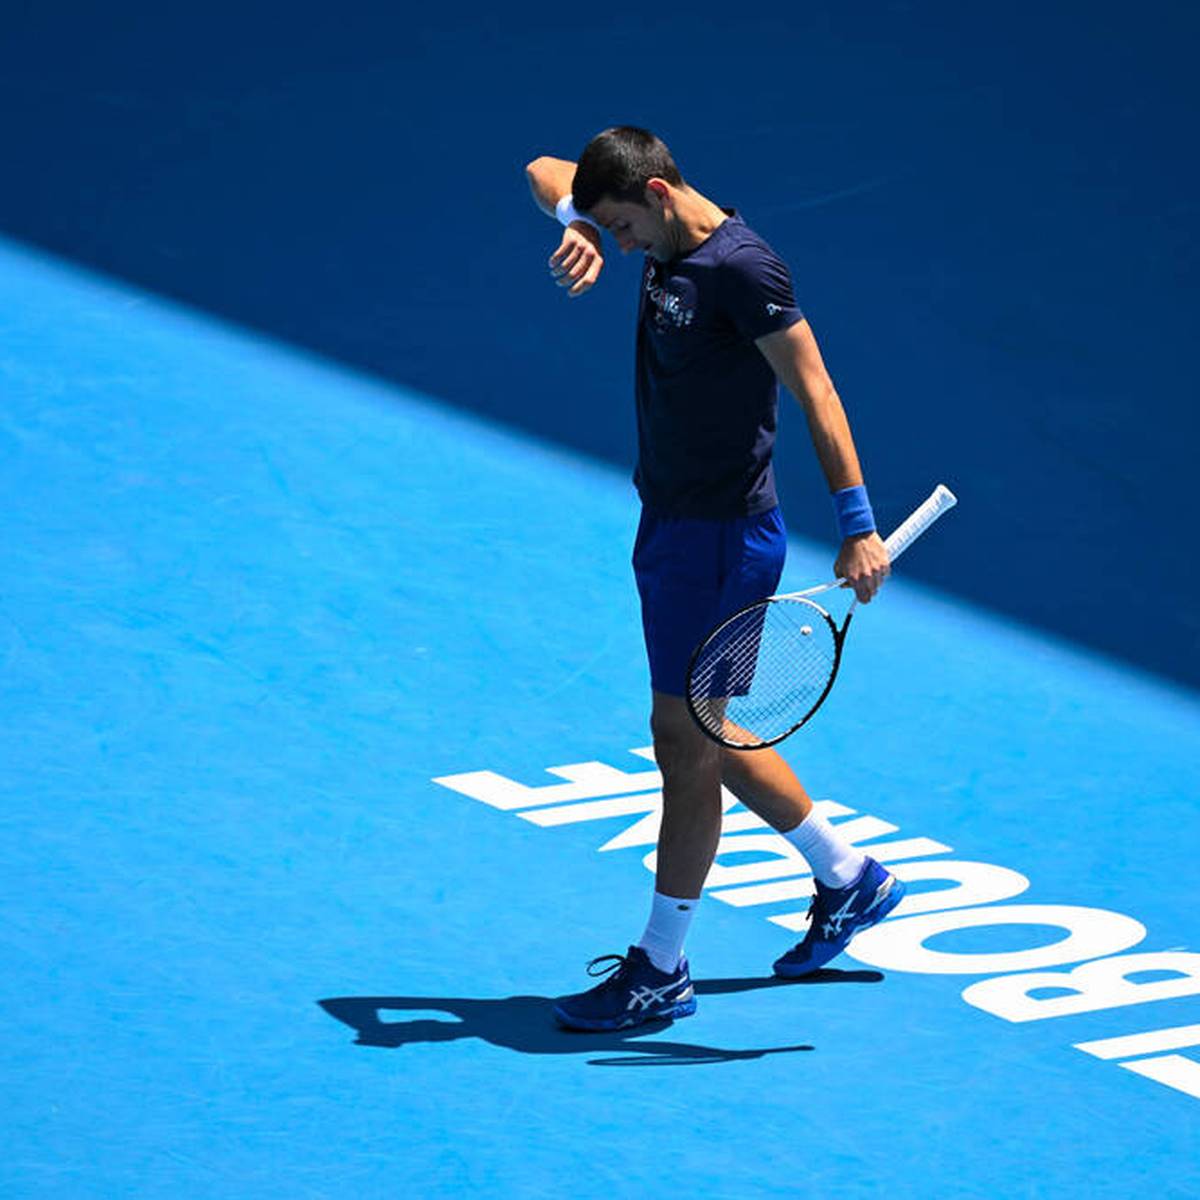 Wegen der Einreise-Saga um Novak Djokovic weiß Miomir Kecmanovic lange nicht, wer sein Auftaktgegner bei den Australian Open sein wird. Sauer ist er deswegen auf den Landsmann noch lange nicht.